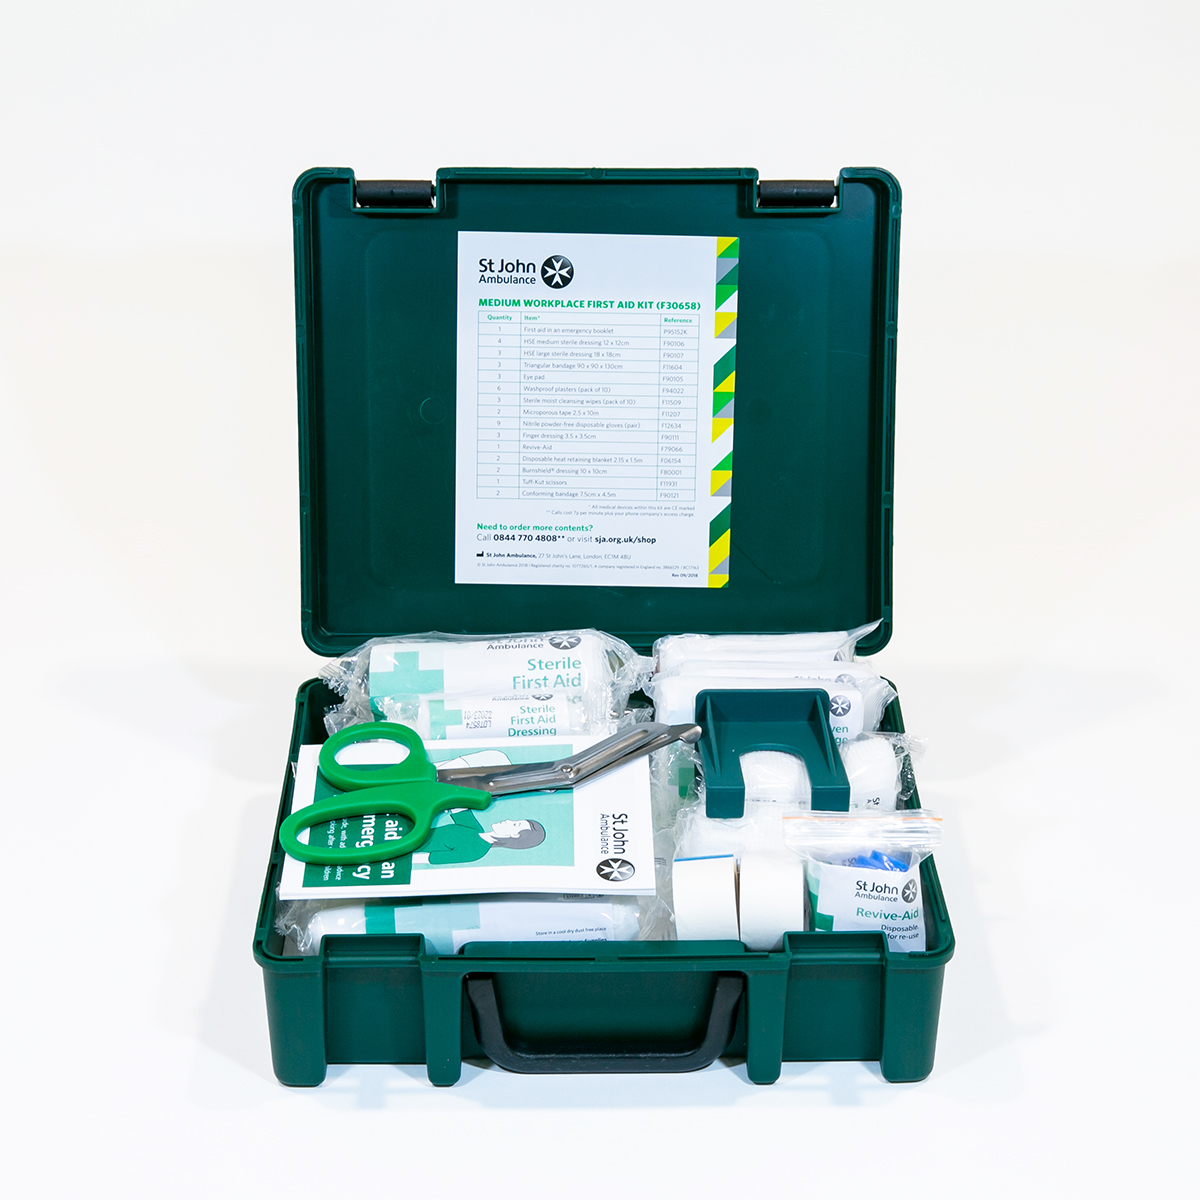 St John Ambulance Medium Standard Workplace First Aid Kit BS 8599-1:2019